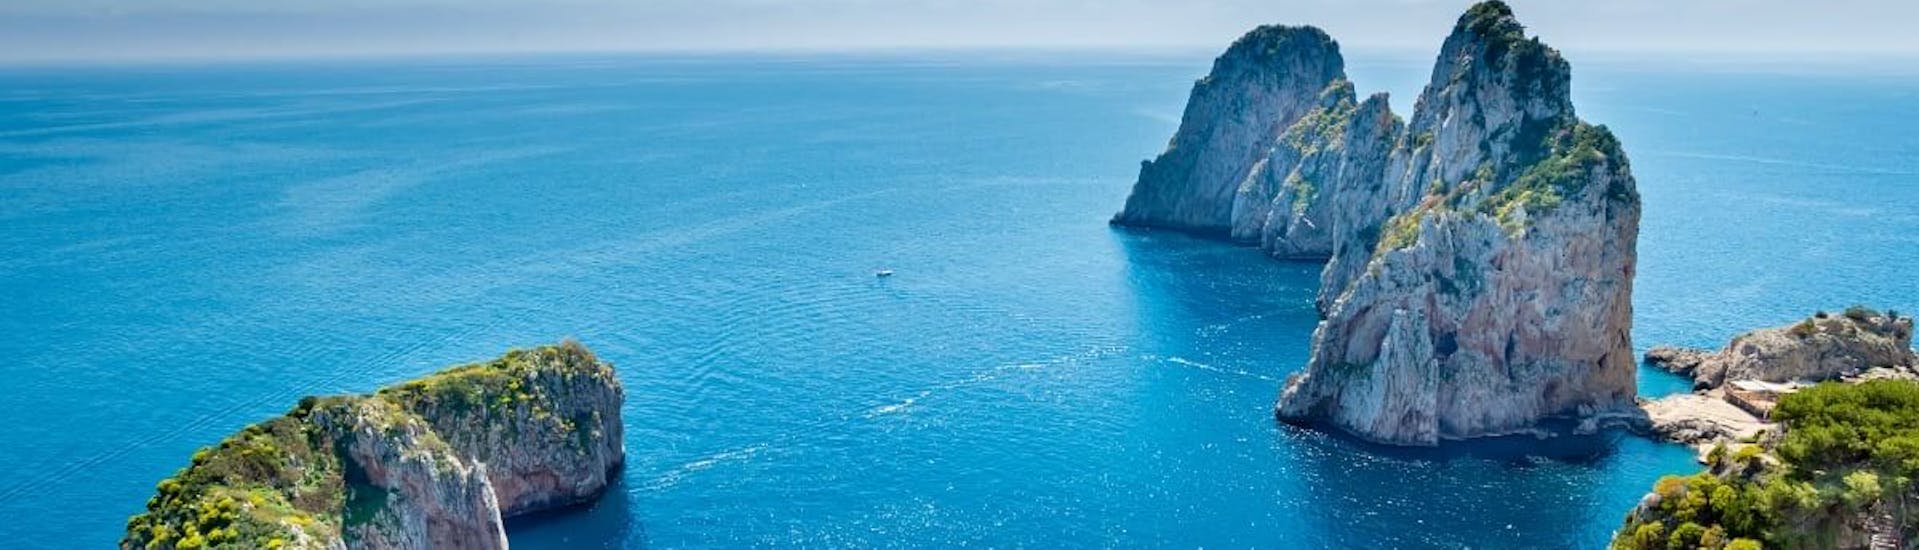 Les eaux cristallines de Sorrente où vous ferez l'excursion en bateau de Pozzuoli à Capri et Sorrente avec déjeuner.